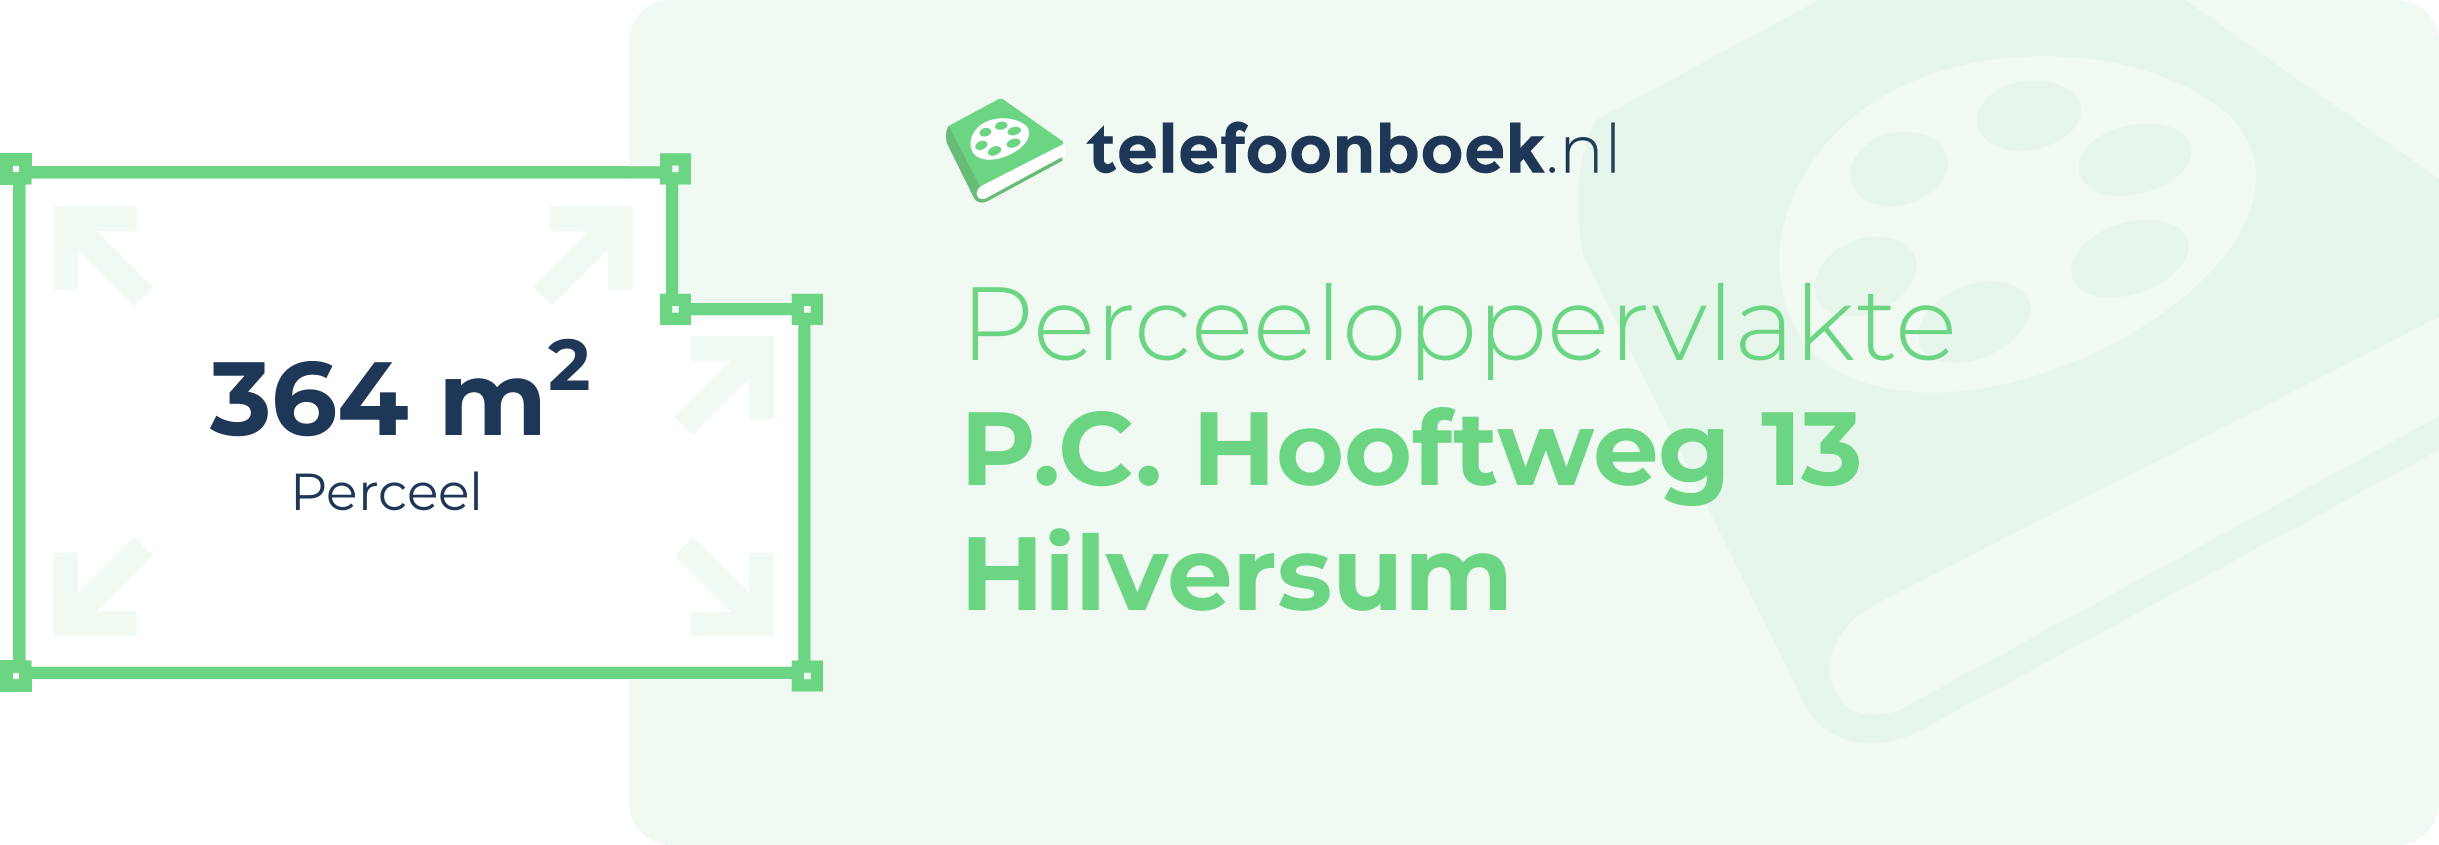 Perceeloppervlakte P.C. Hooftweg 13 Hilversum